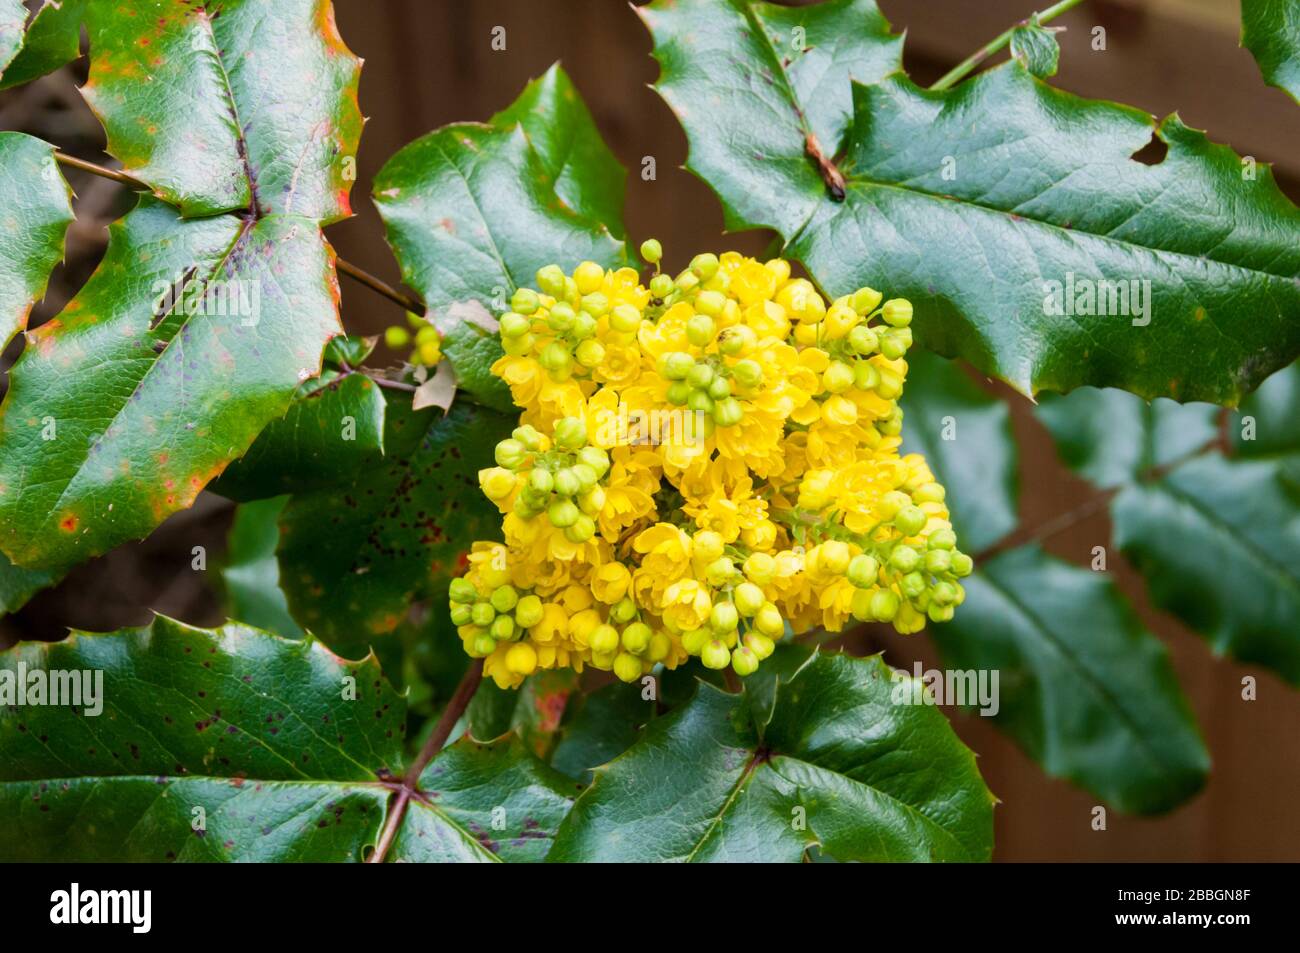 Fiori gialli su uva Oregon, Mahonia aquifolium. Foto Stock